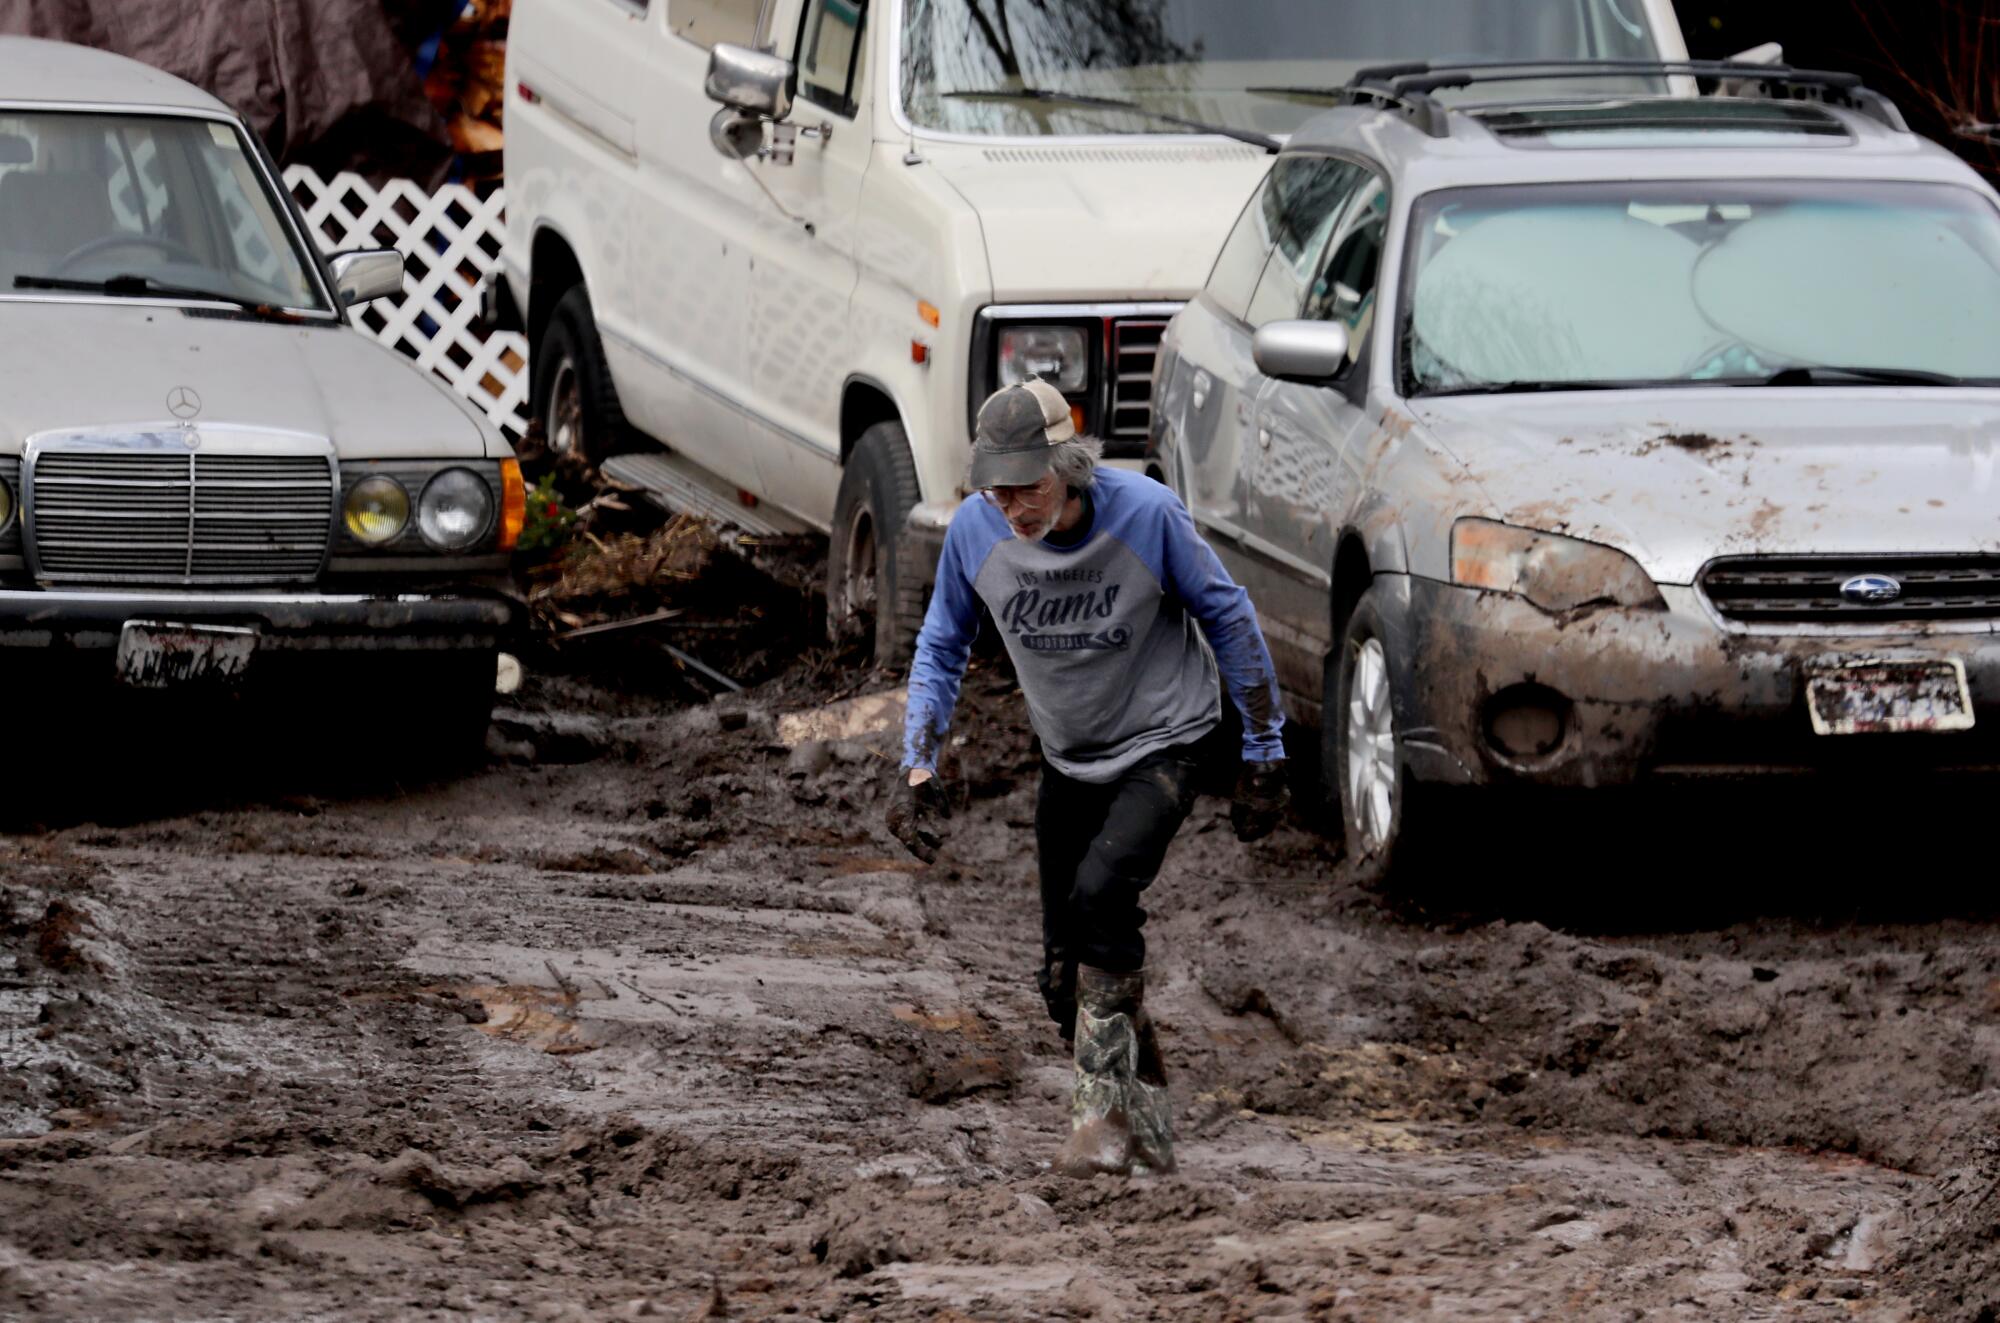 A person walks through mud near cars